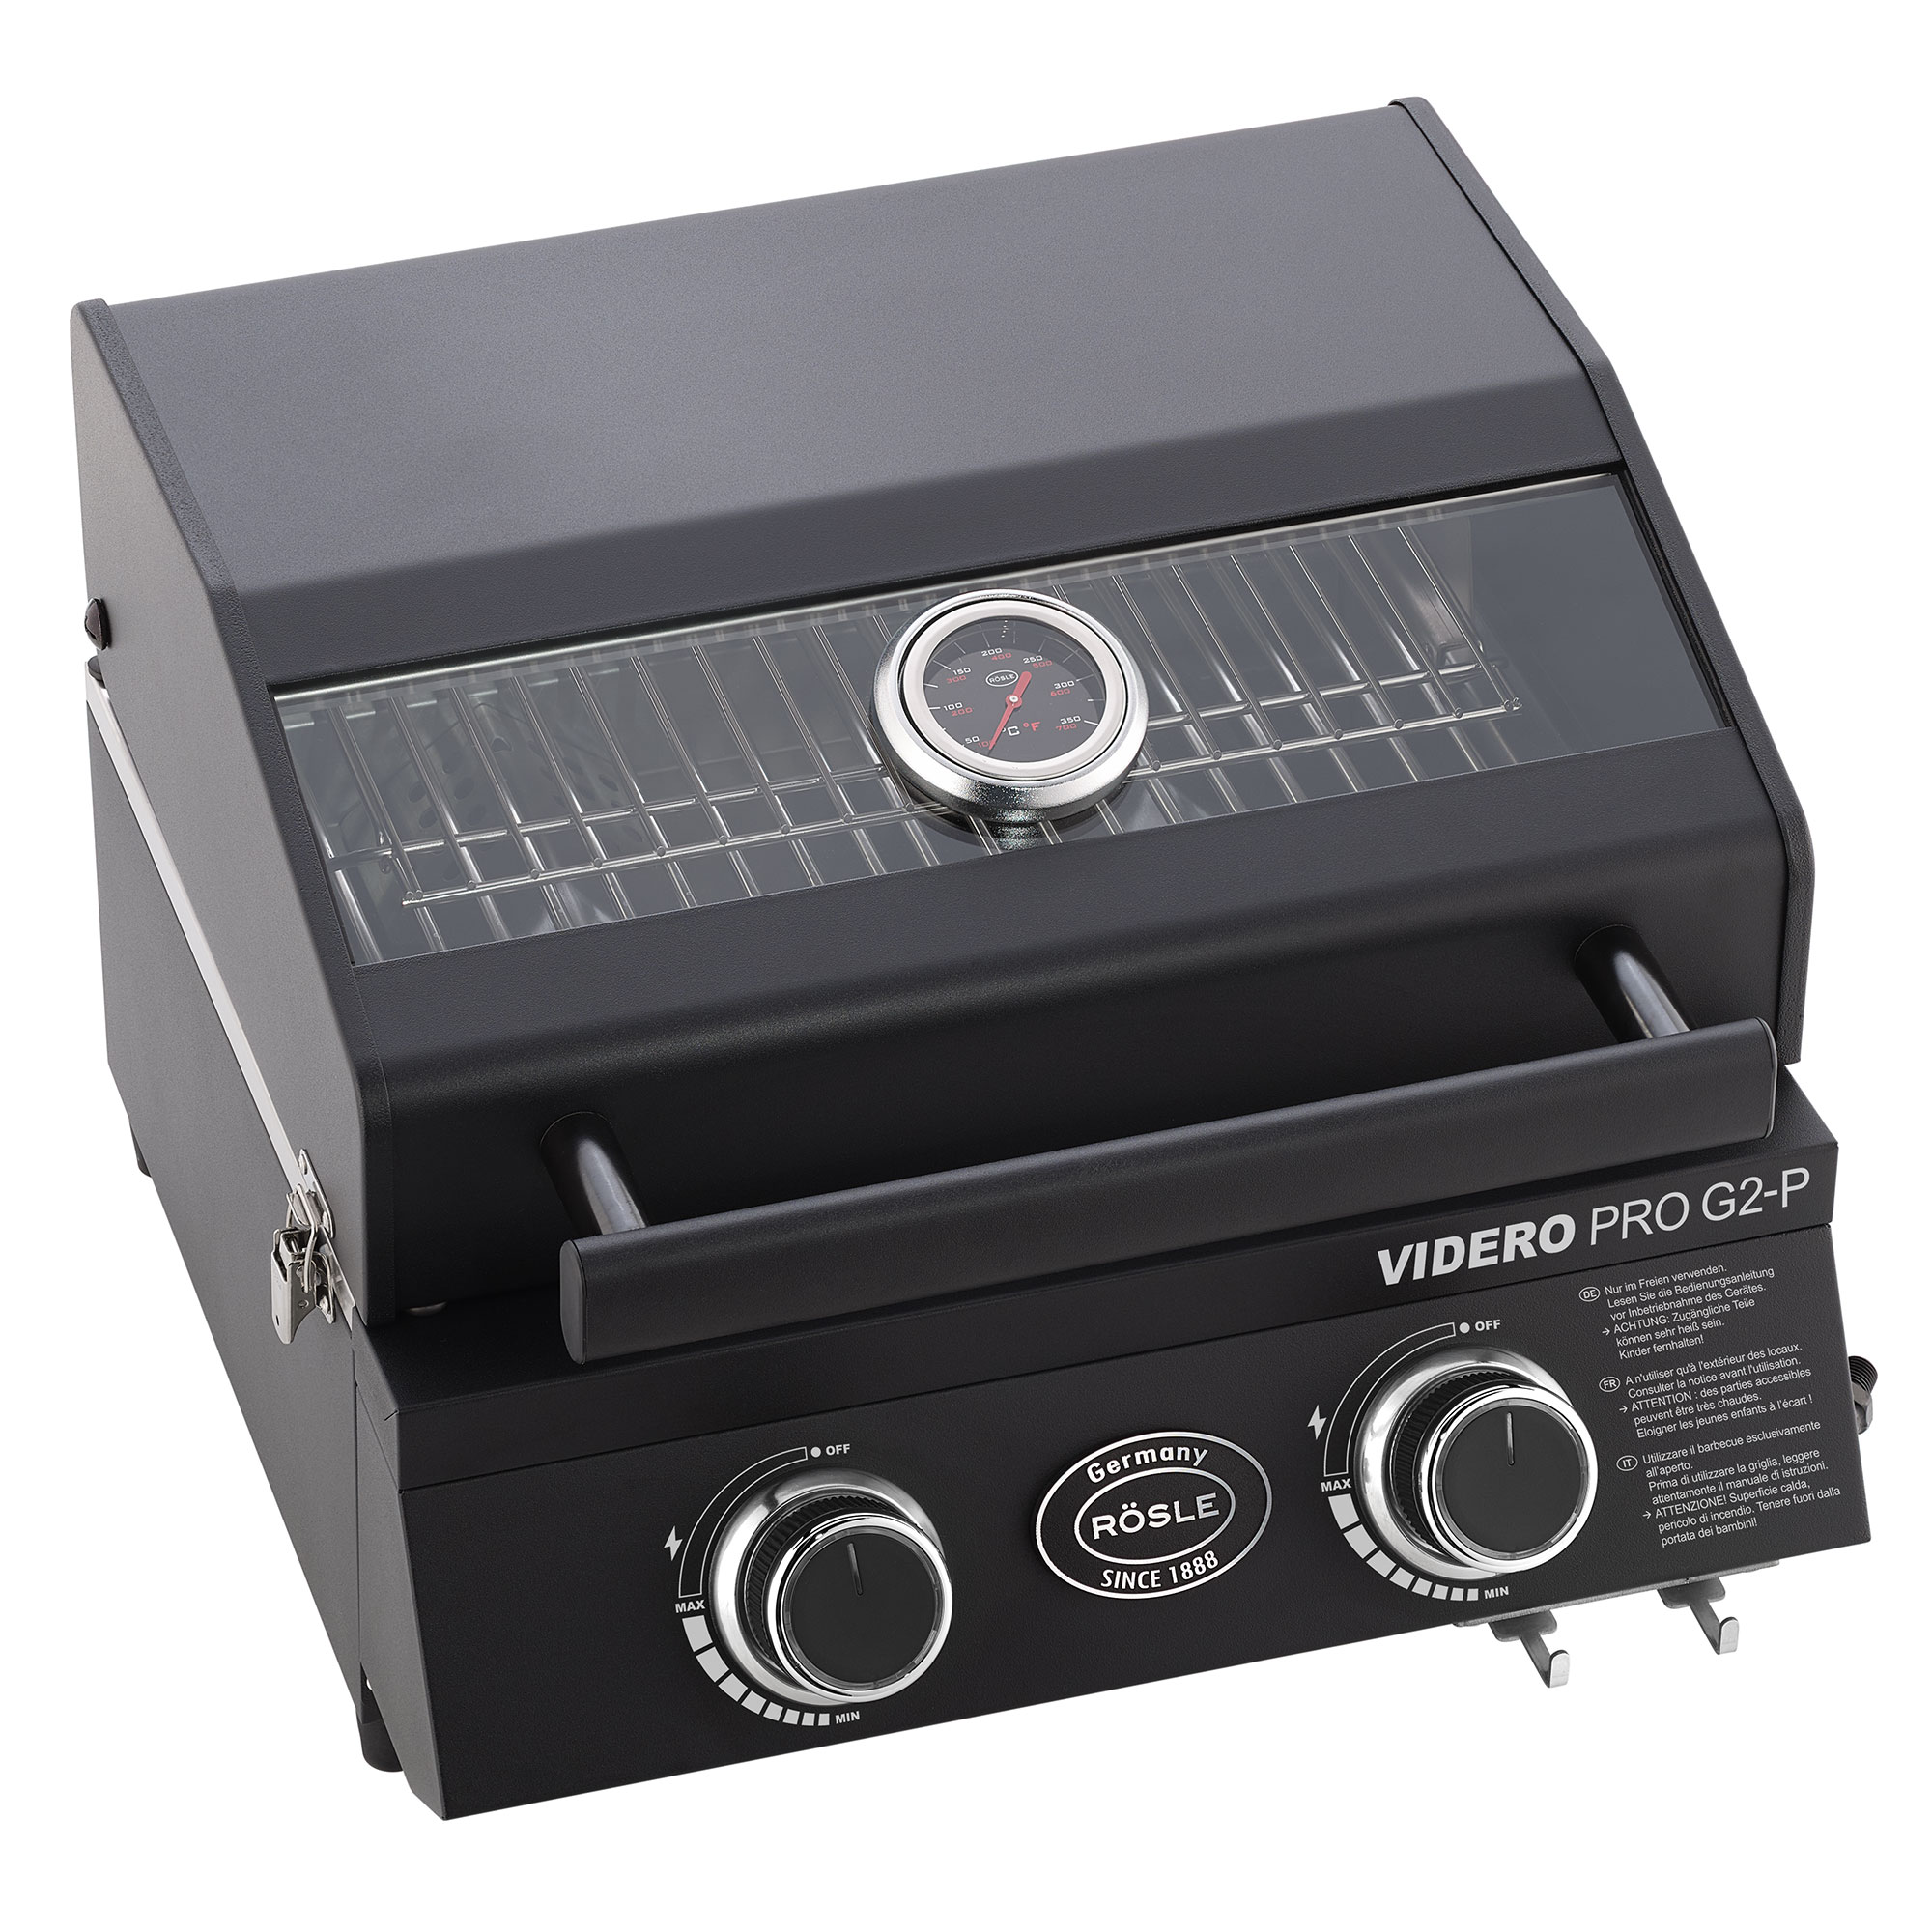 Gas grill BBQ-Portable VIDERO PRO G2-P 50mbar